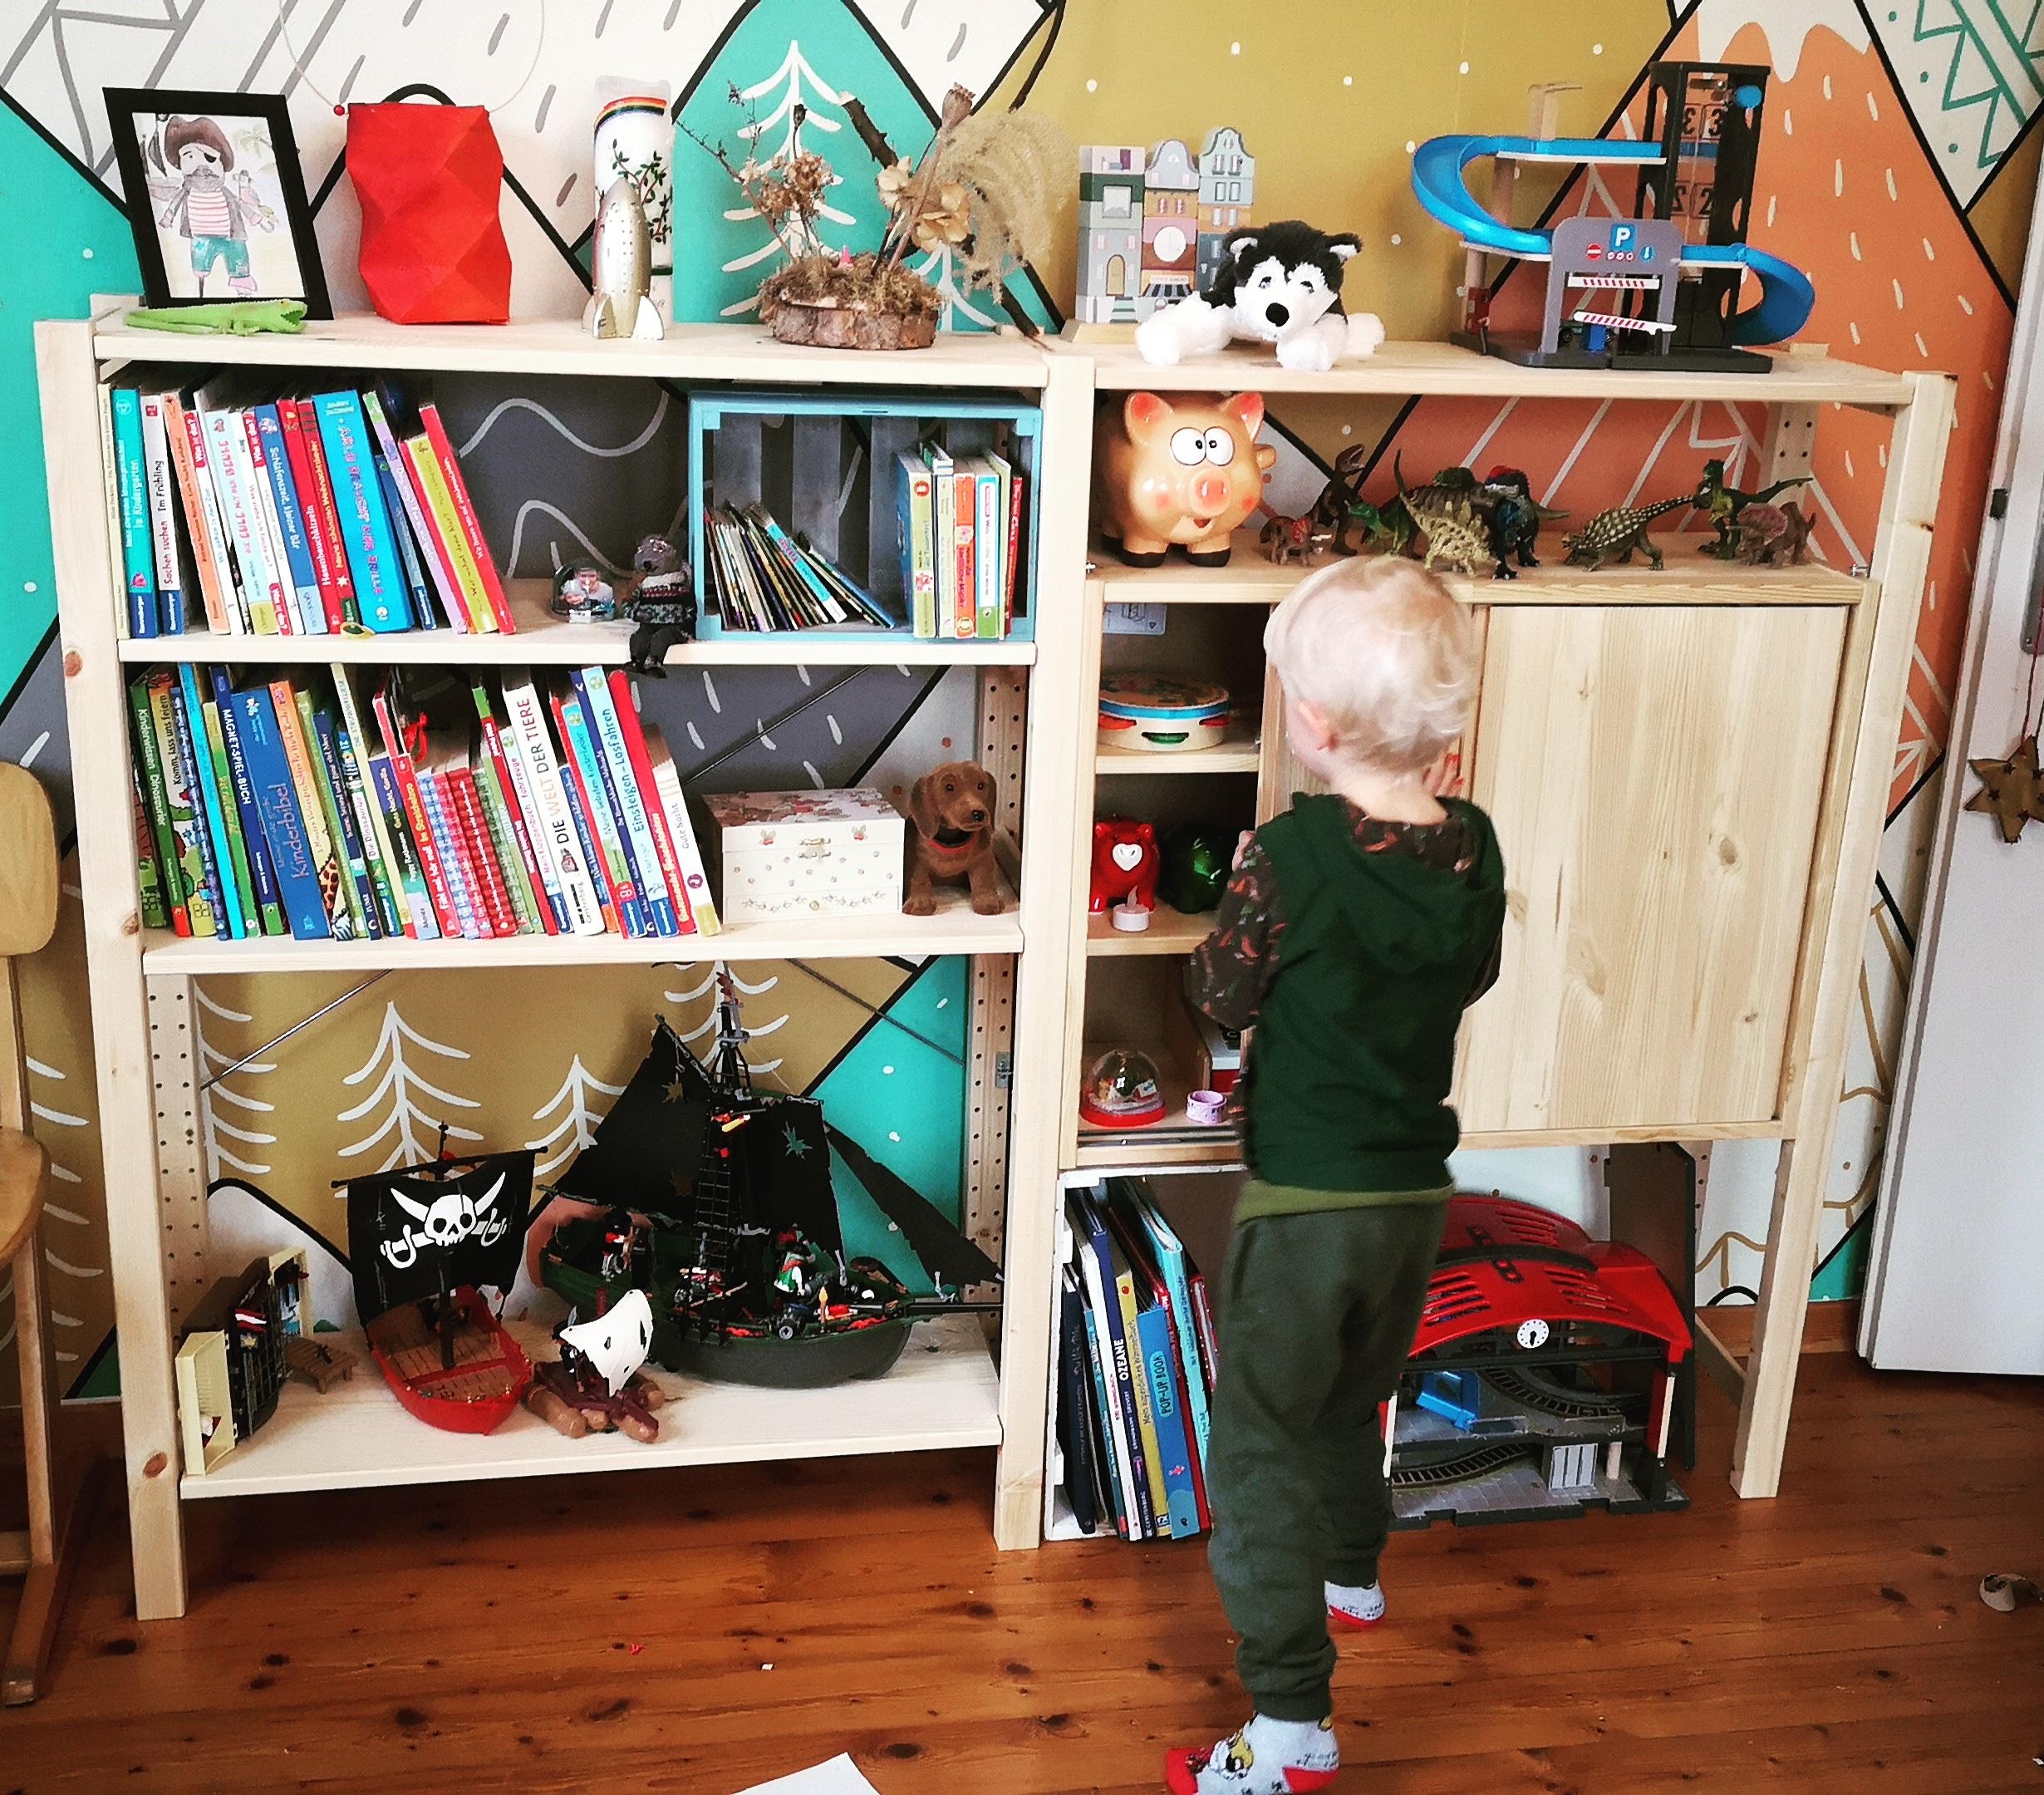 #skandi #kinderzimmer #ivar
Wir lieben unsere neue Stauraumlösung